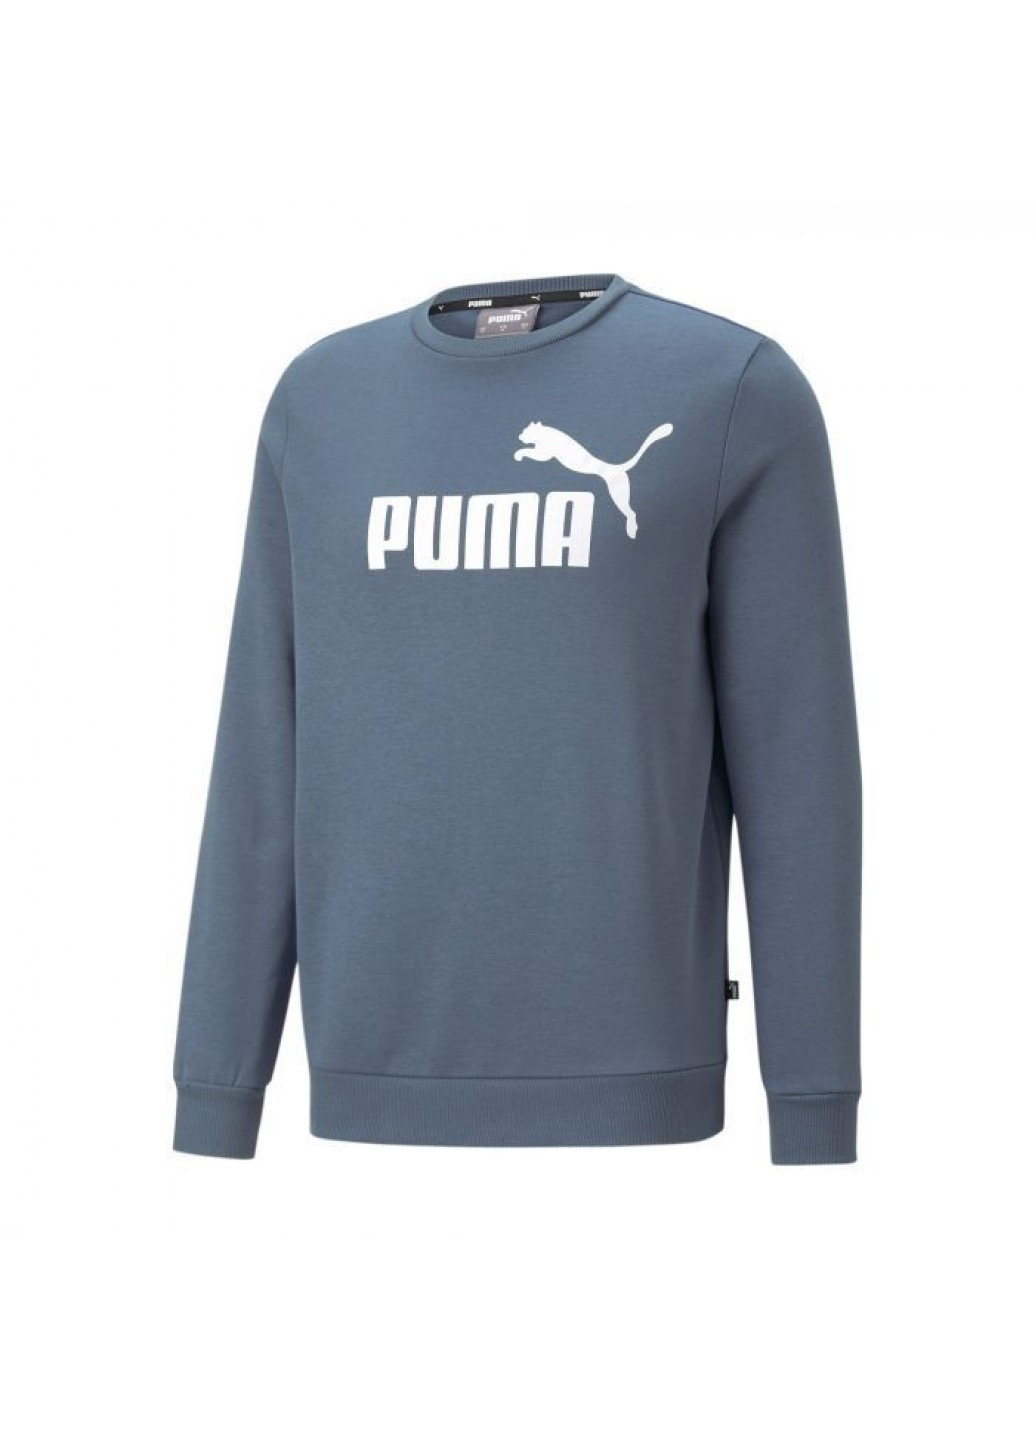 Свишот Puma - Прямой крой логотип синий спортивный хлопок - (256008696)